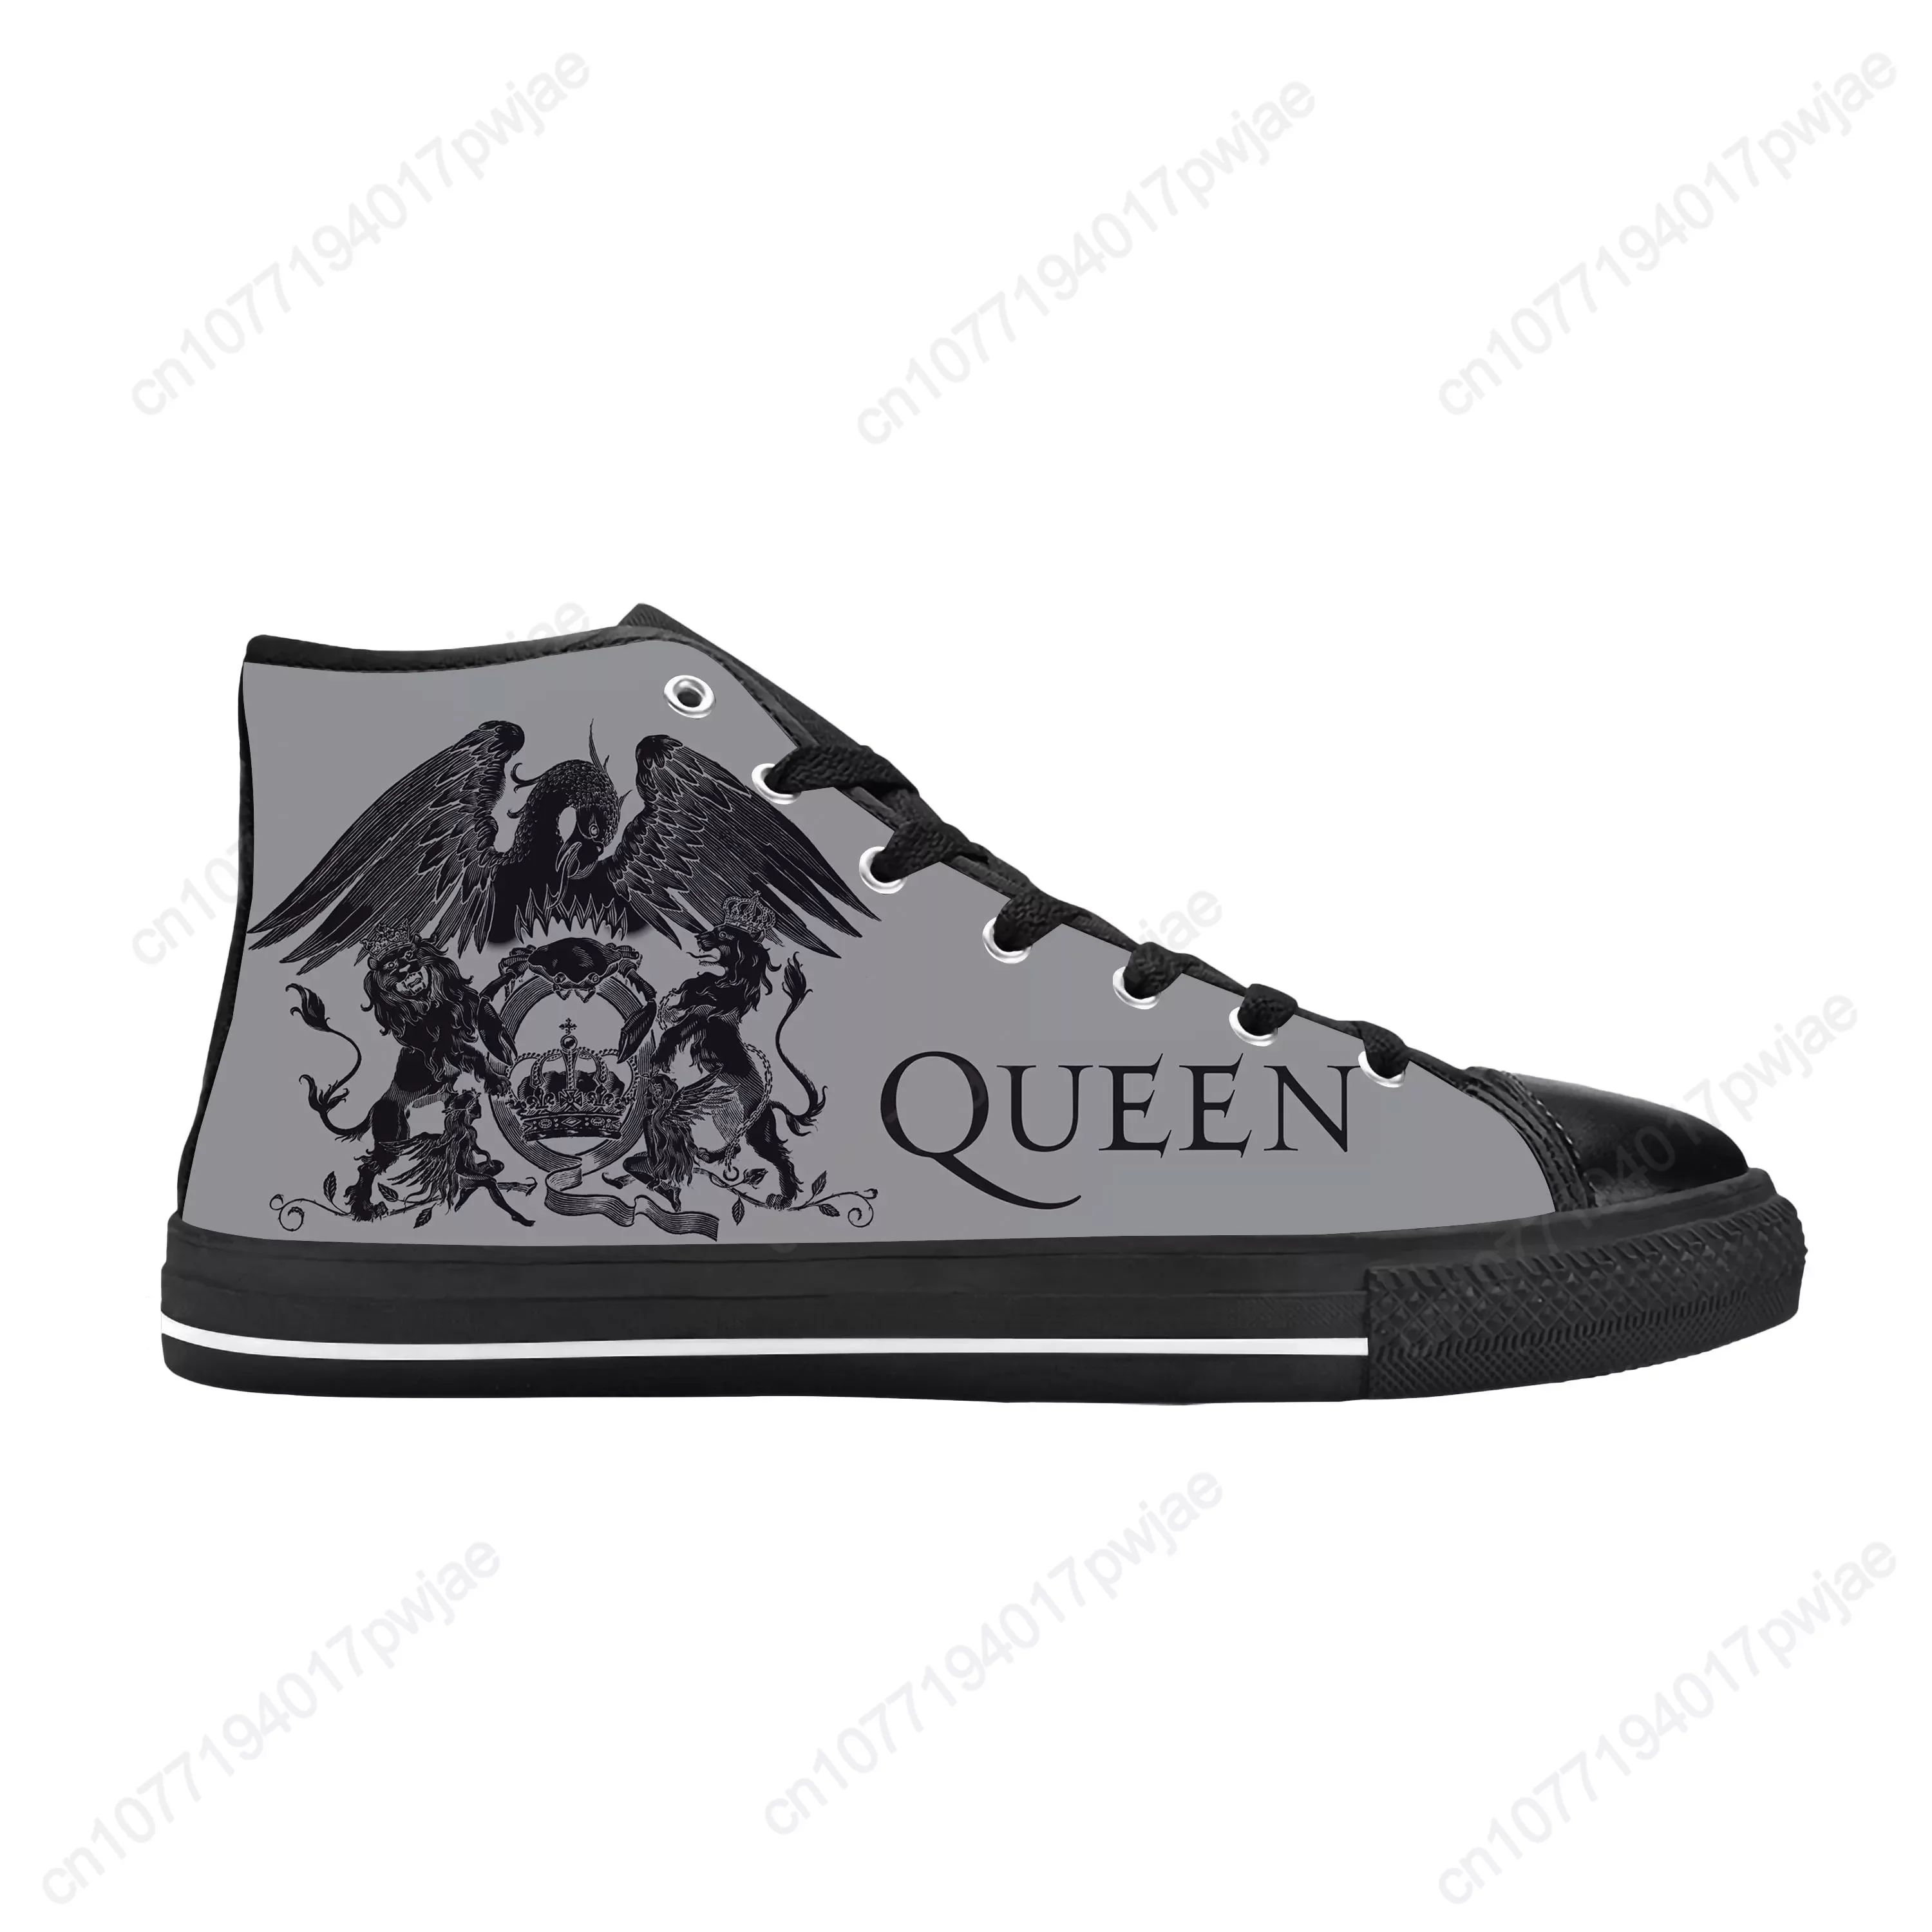 Color:Queen7Shoe Size:12